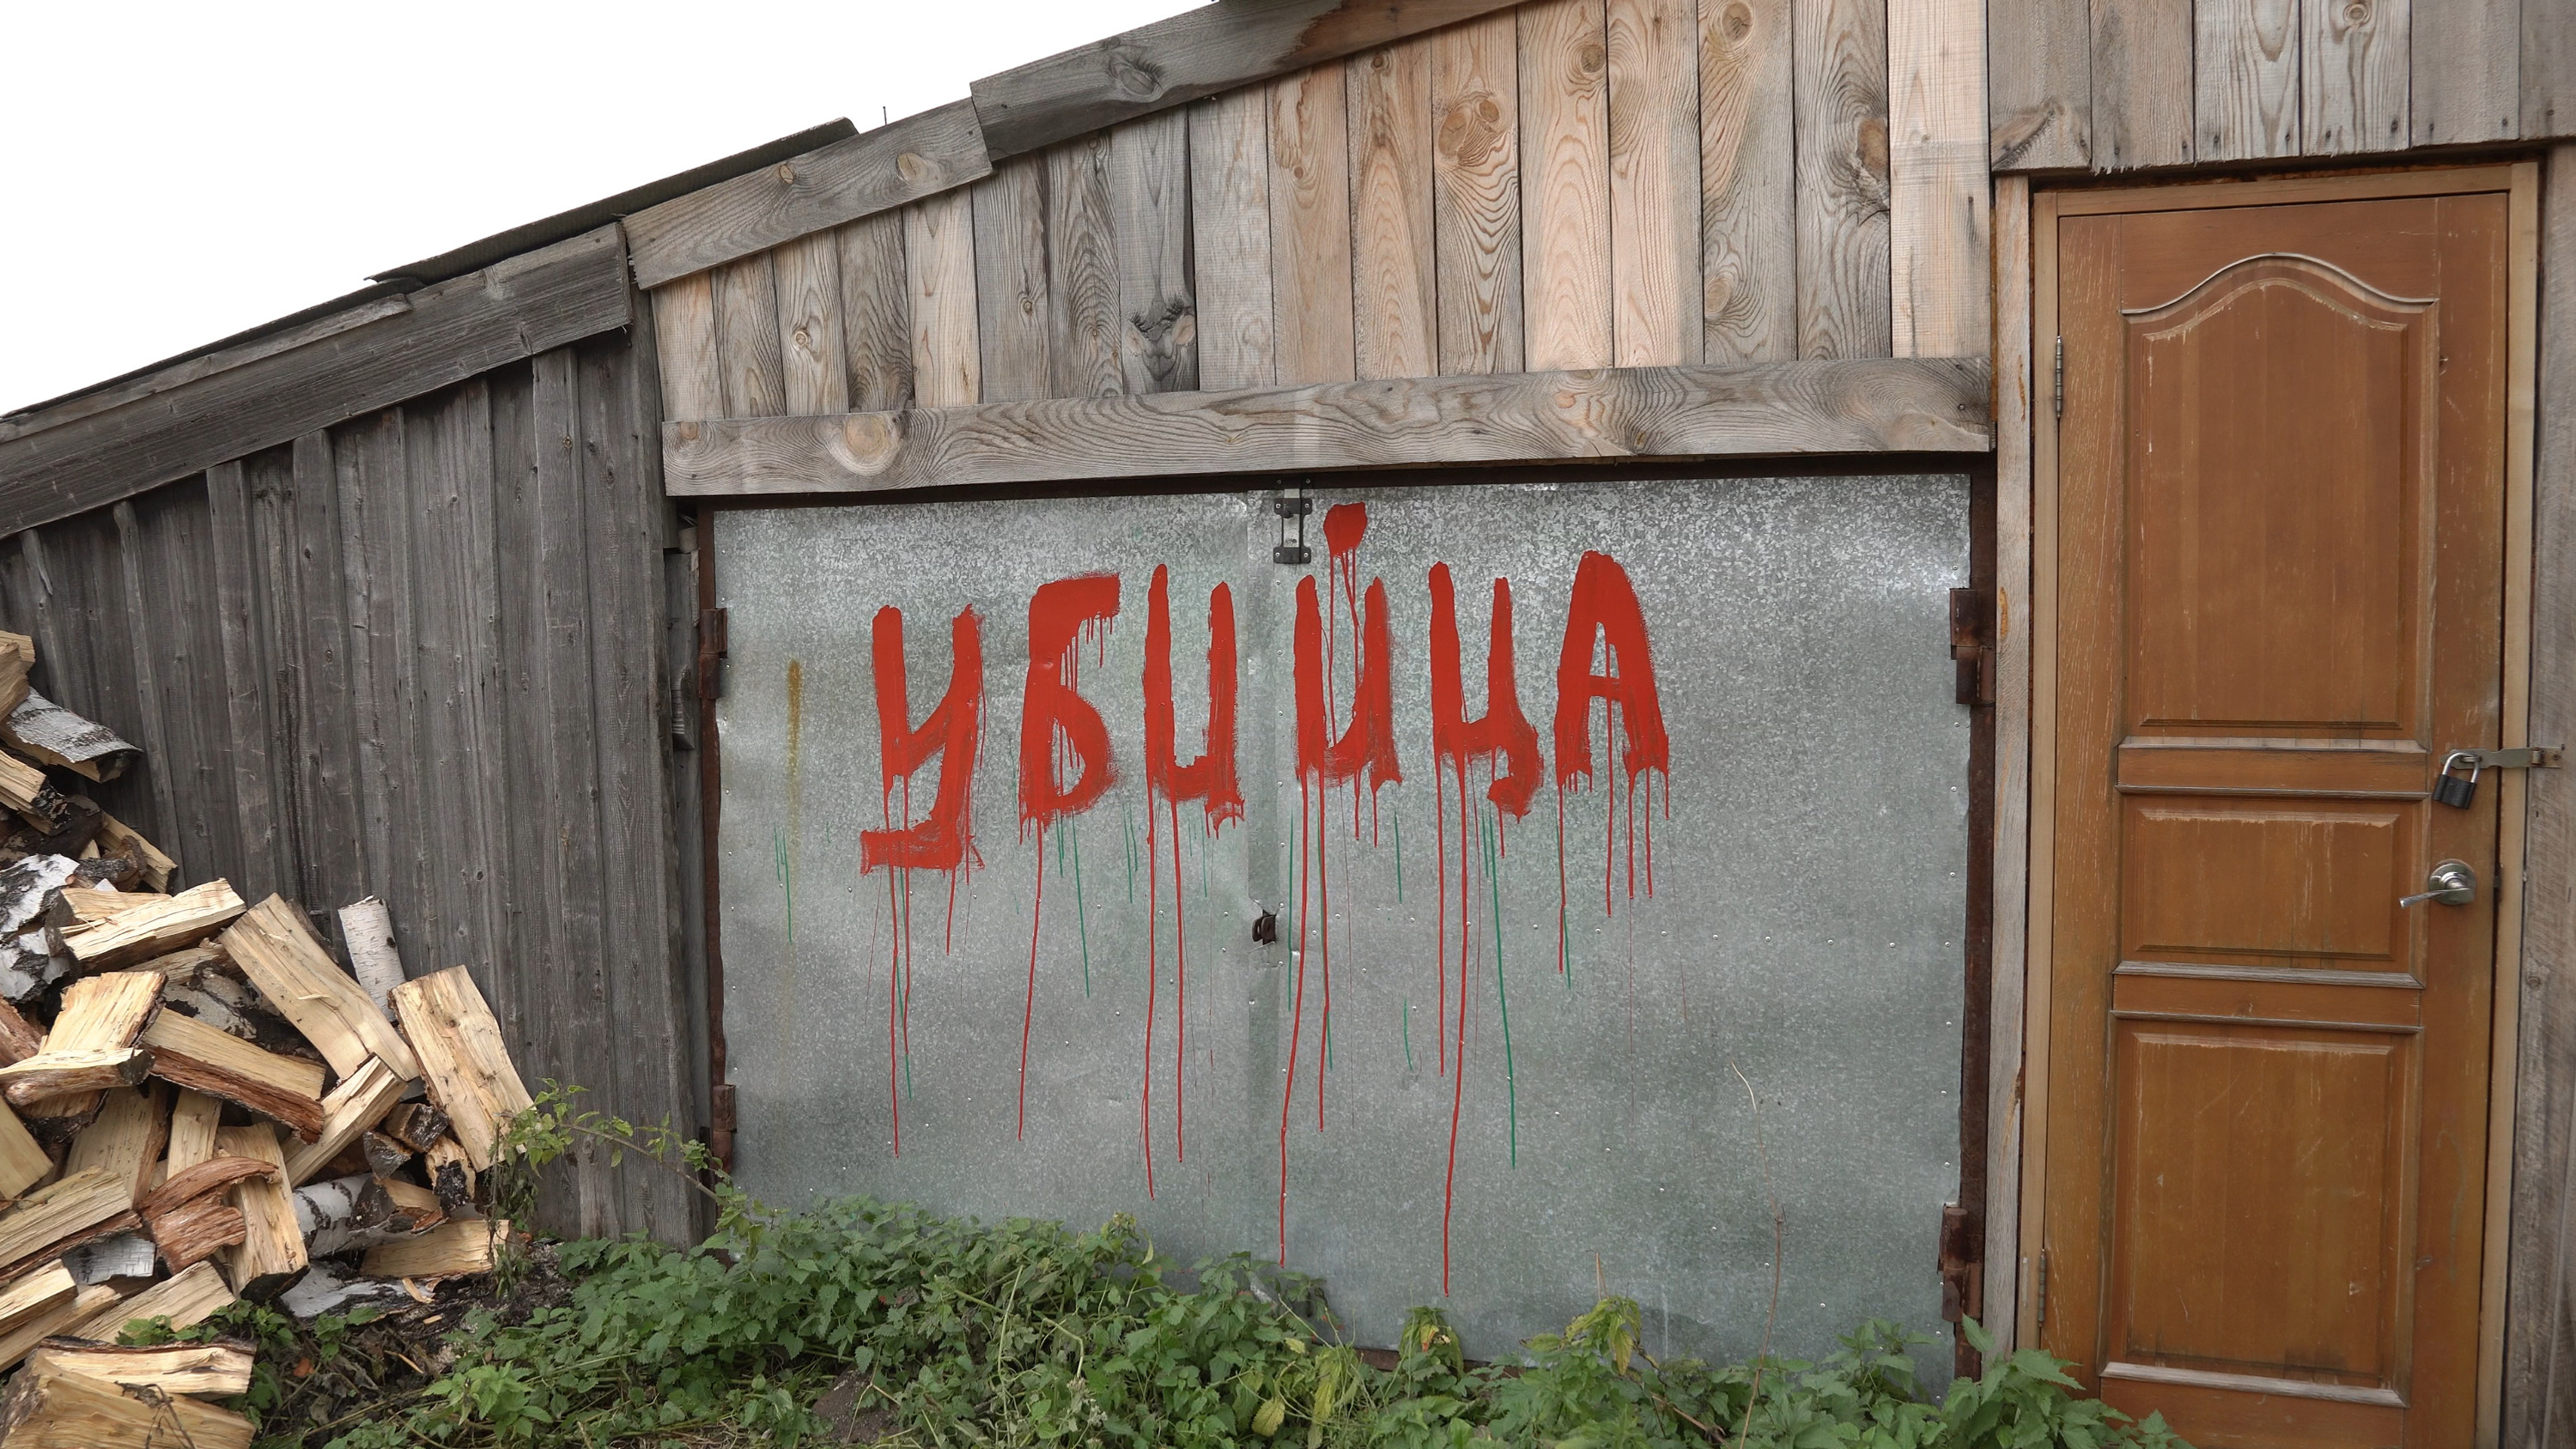 «Осиротела деревня. Сволочи»: в сибирском селе пьяные пациенты убили единственного медика — как их искали и спасали от самосуда